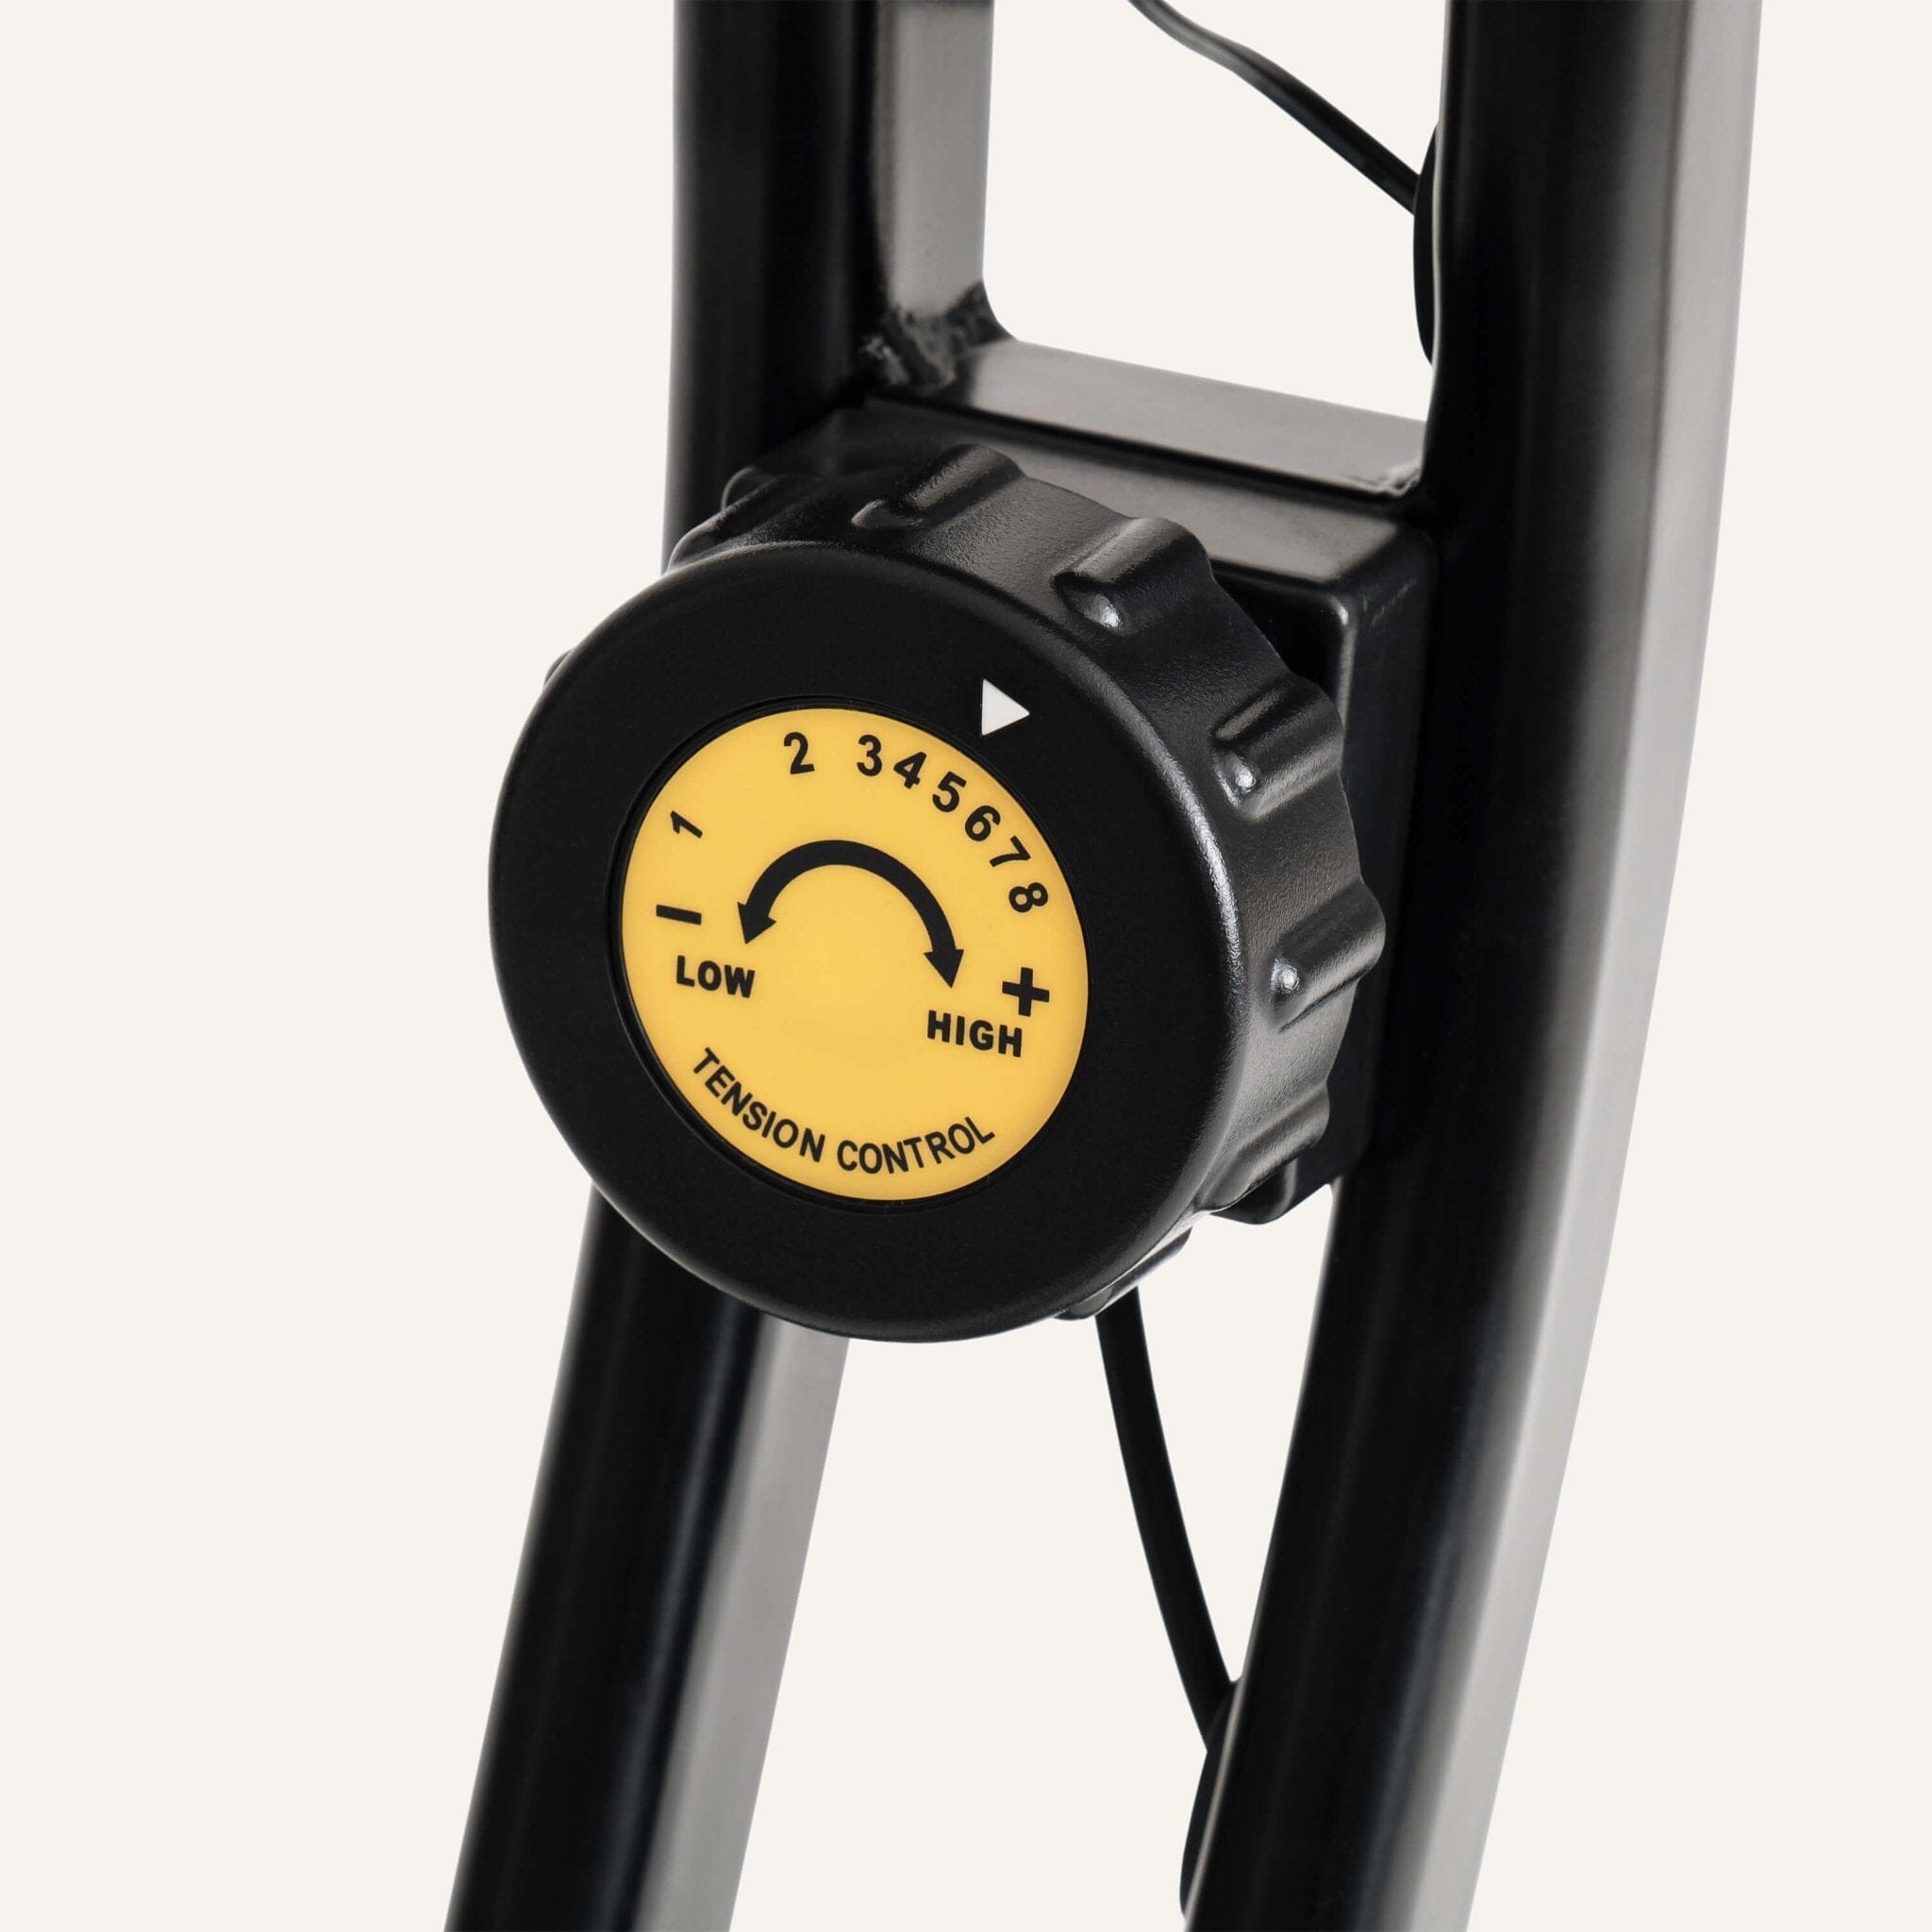 Klappbarer Heimtrainer (X-Bike) mit App-Kompatibilität SP-HT-1200-iE SportPlus 